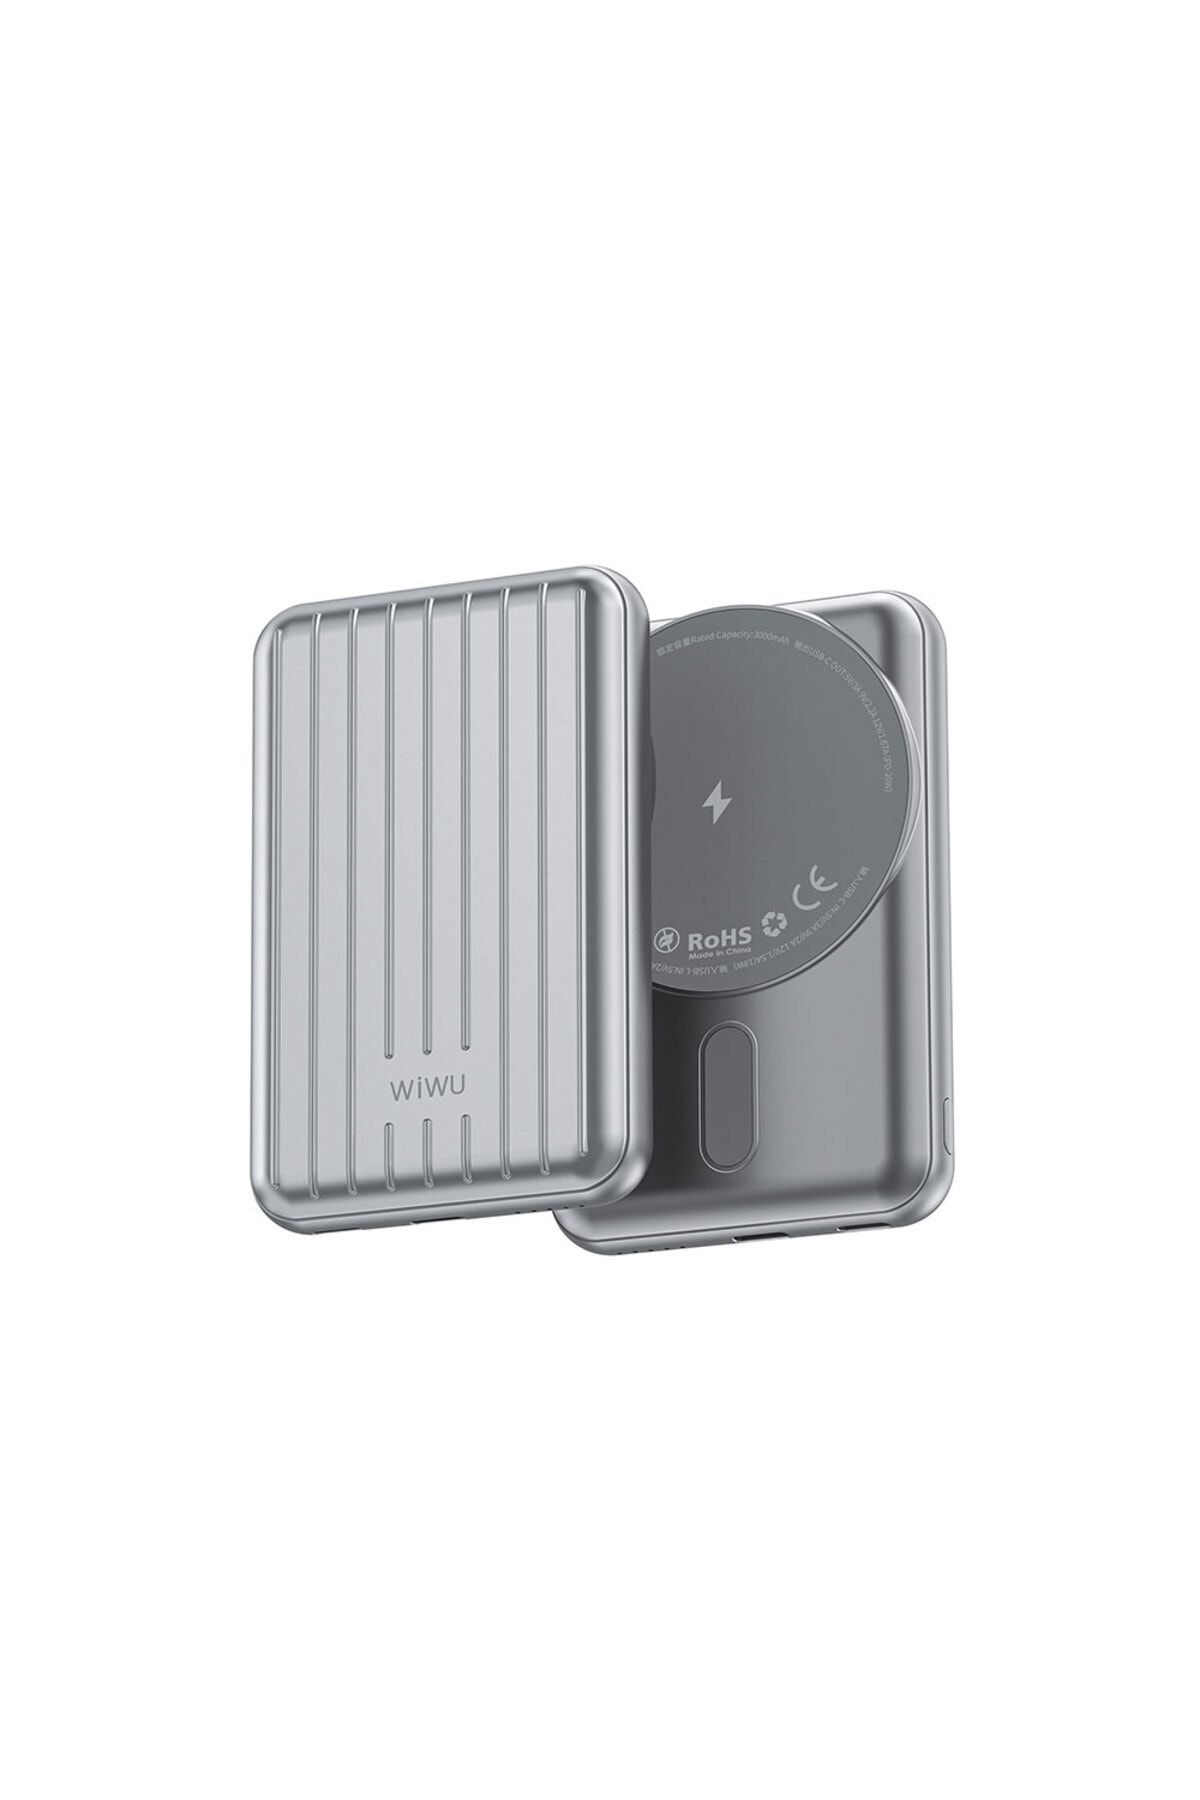 WIWU Taşınabilir Wireless Şarj ve PD Hızlı Şarj Özellikli Powerbank Wiwu PP02 15W 5000mAh Gümüş